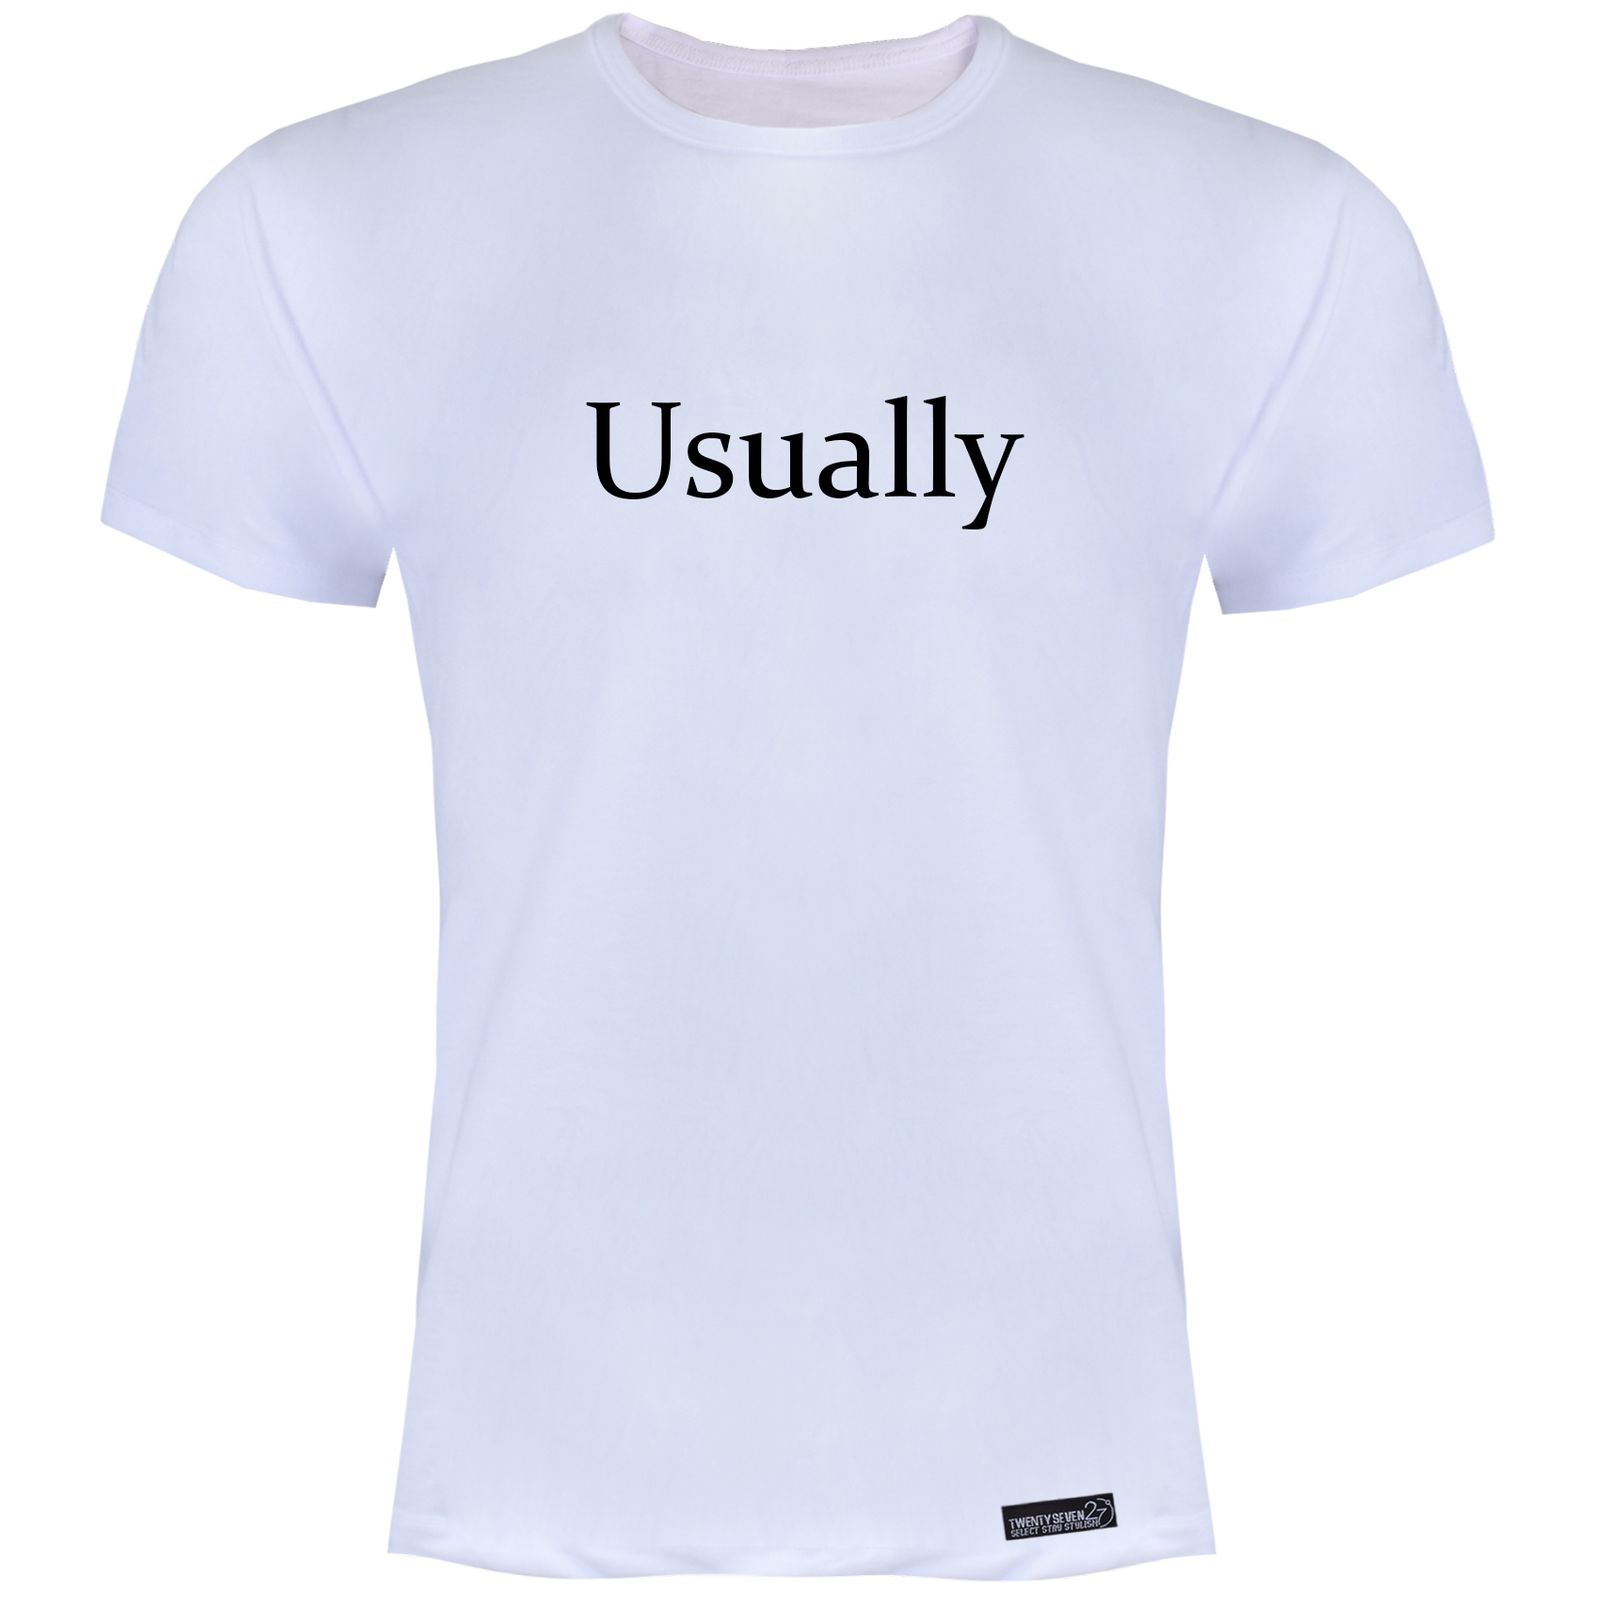 تی شرت آستین کوتاه مردانه 27 مدل Usually کد KV101 رنگ سفید -  - 1